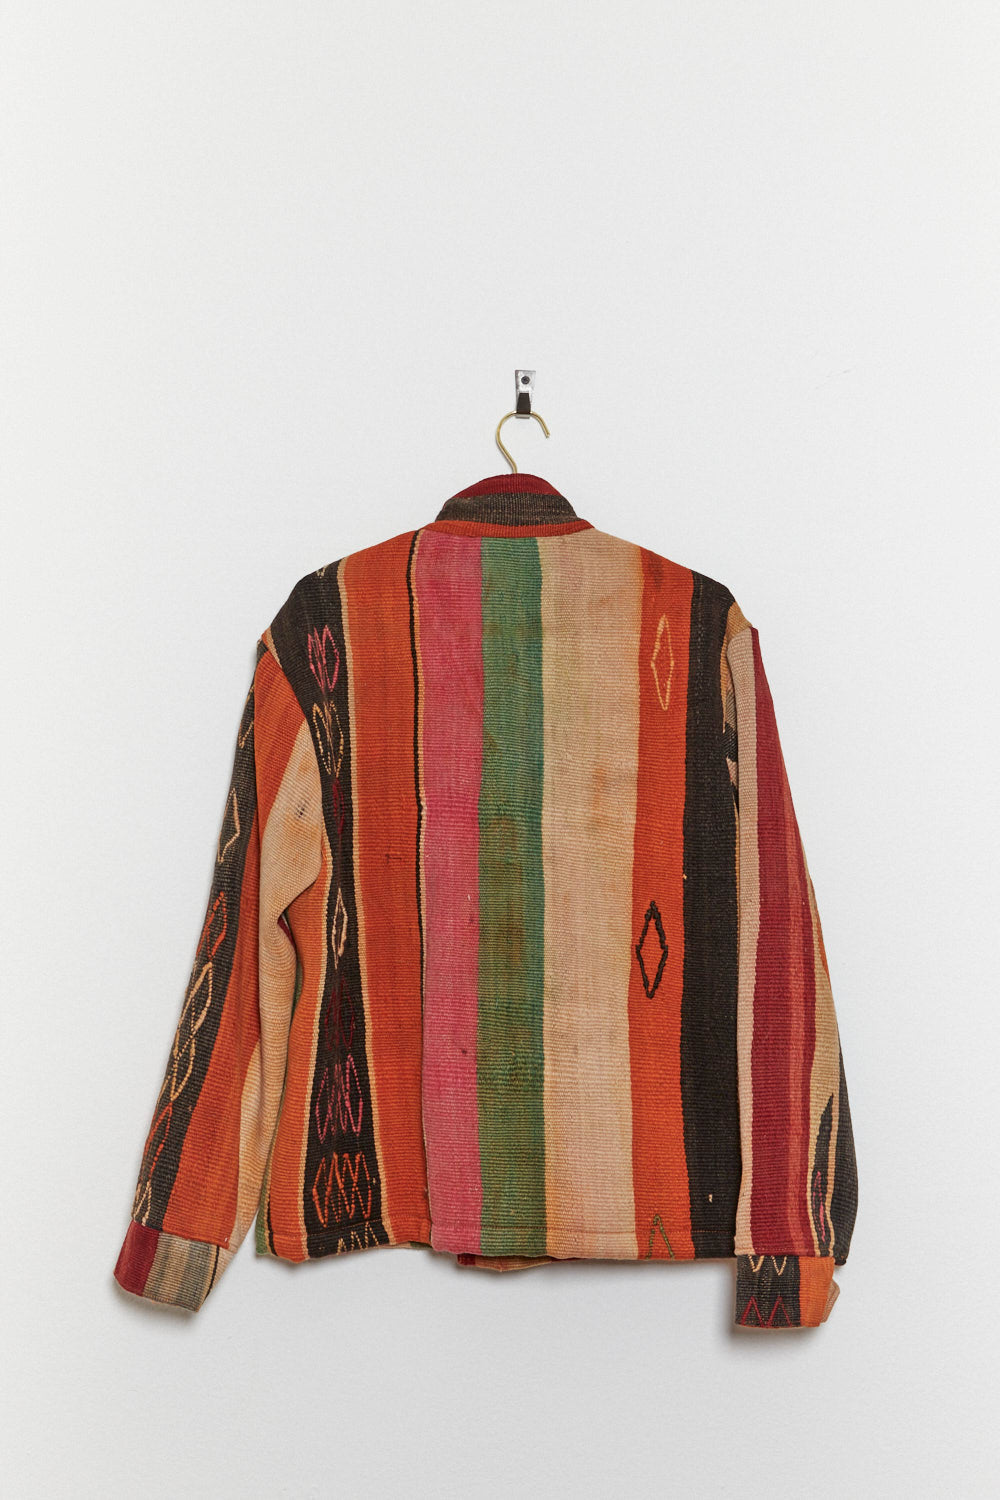 Afghan Kilim Chore Coat - Size Large